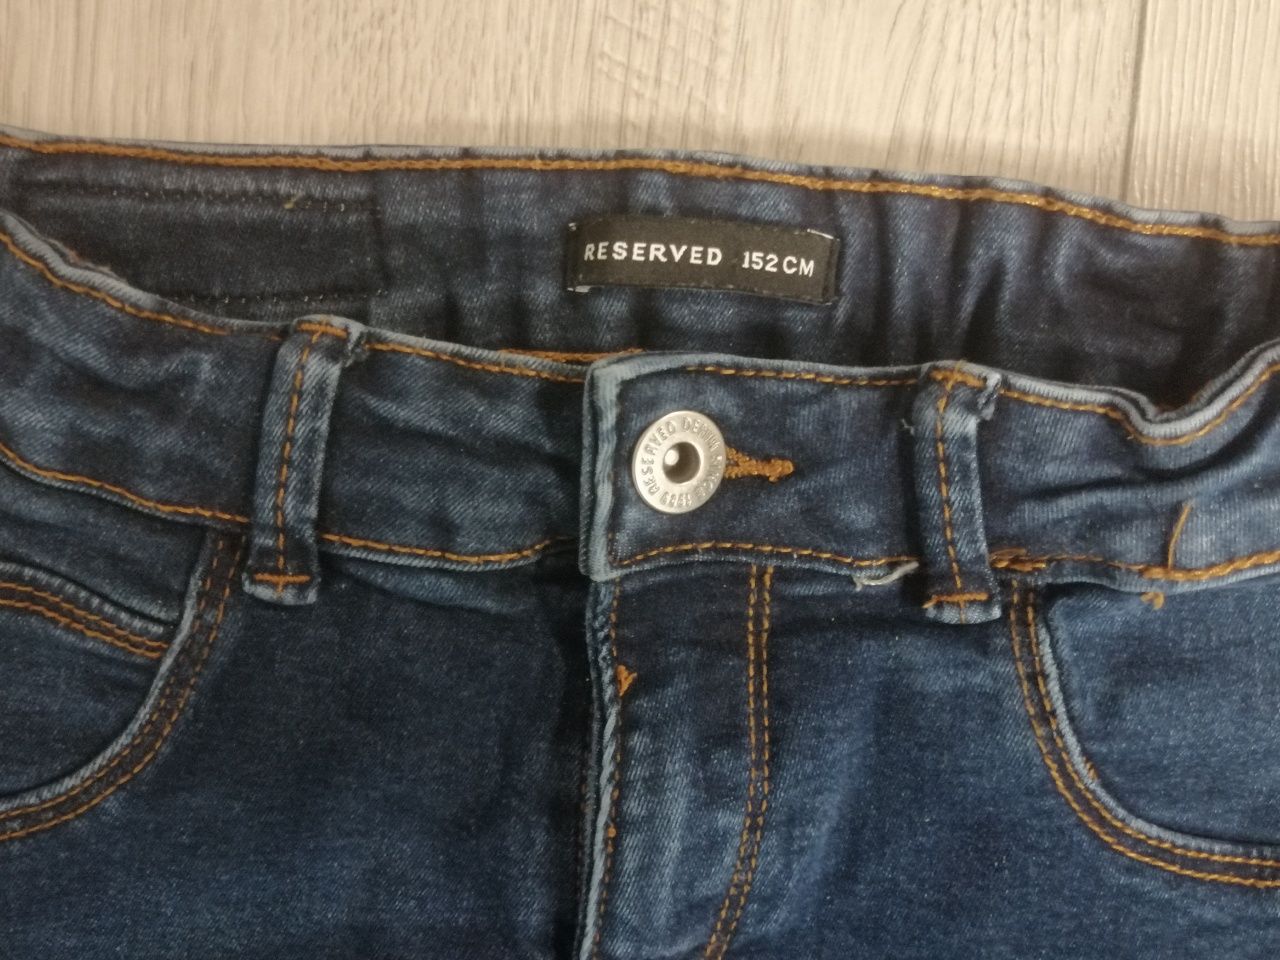 Spodnie jeansowe ZARA RESERVED 152 dla dziewczynki